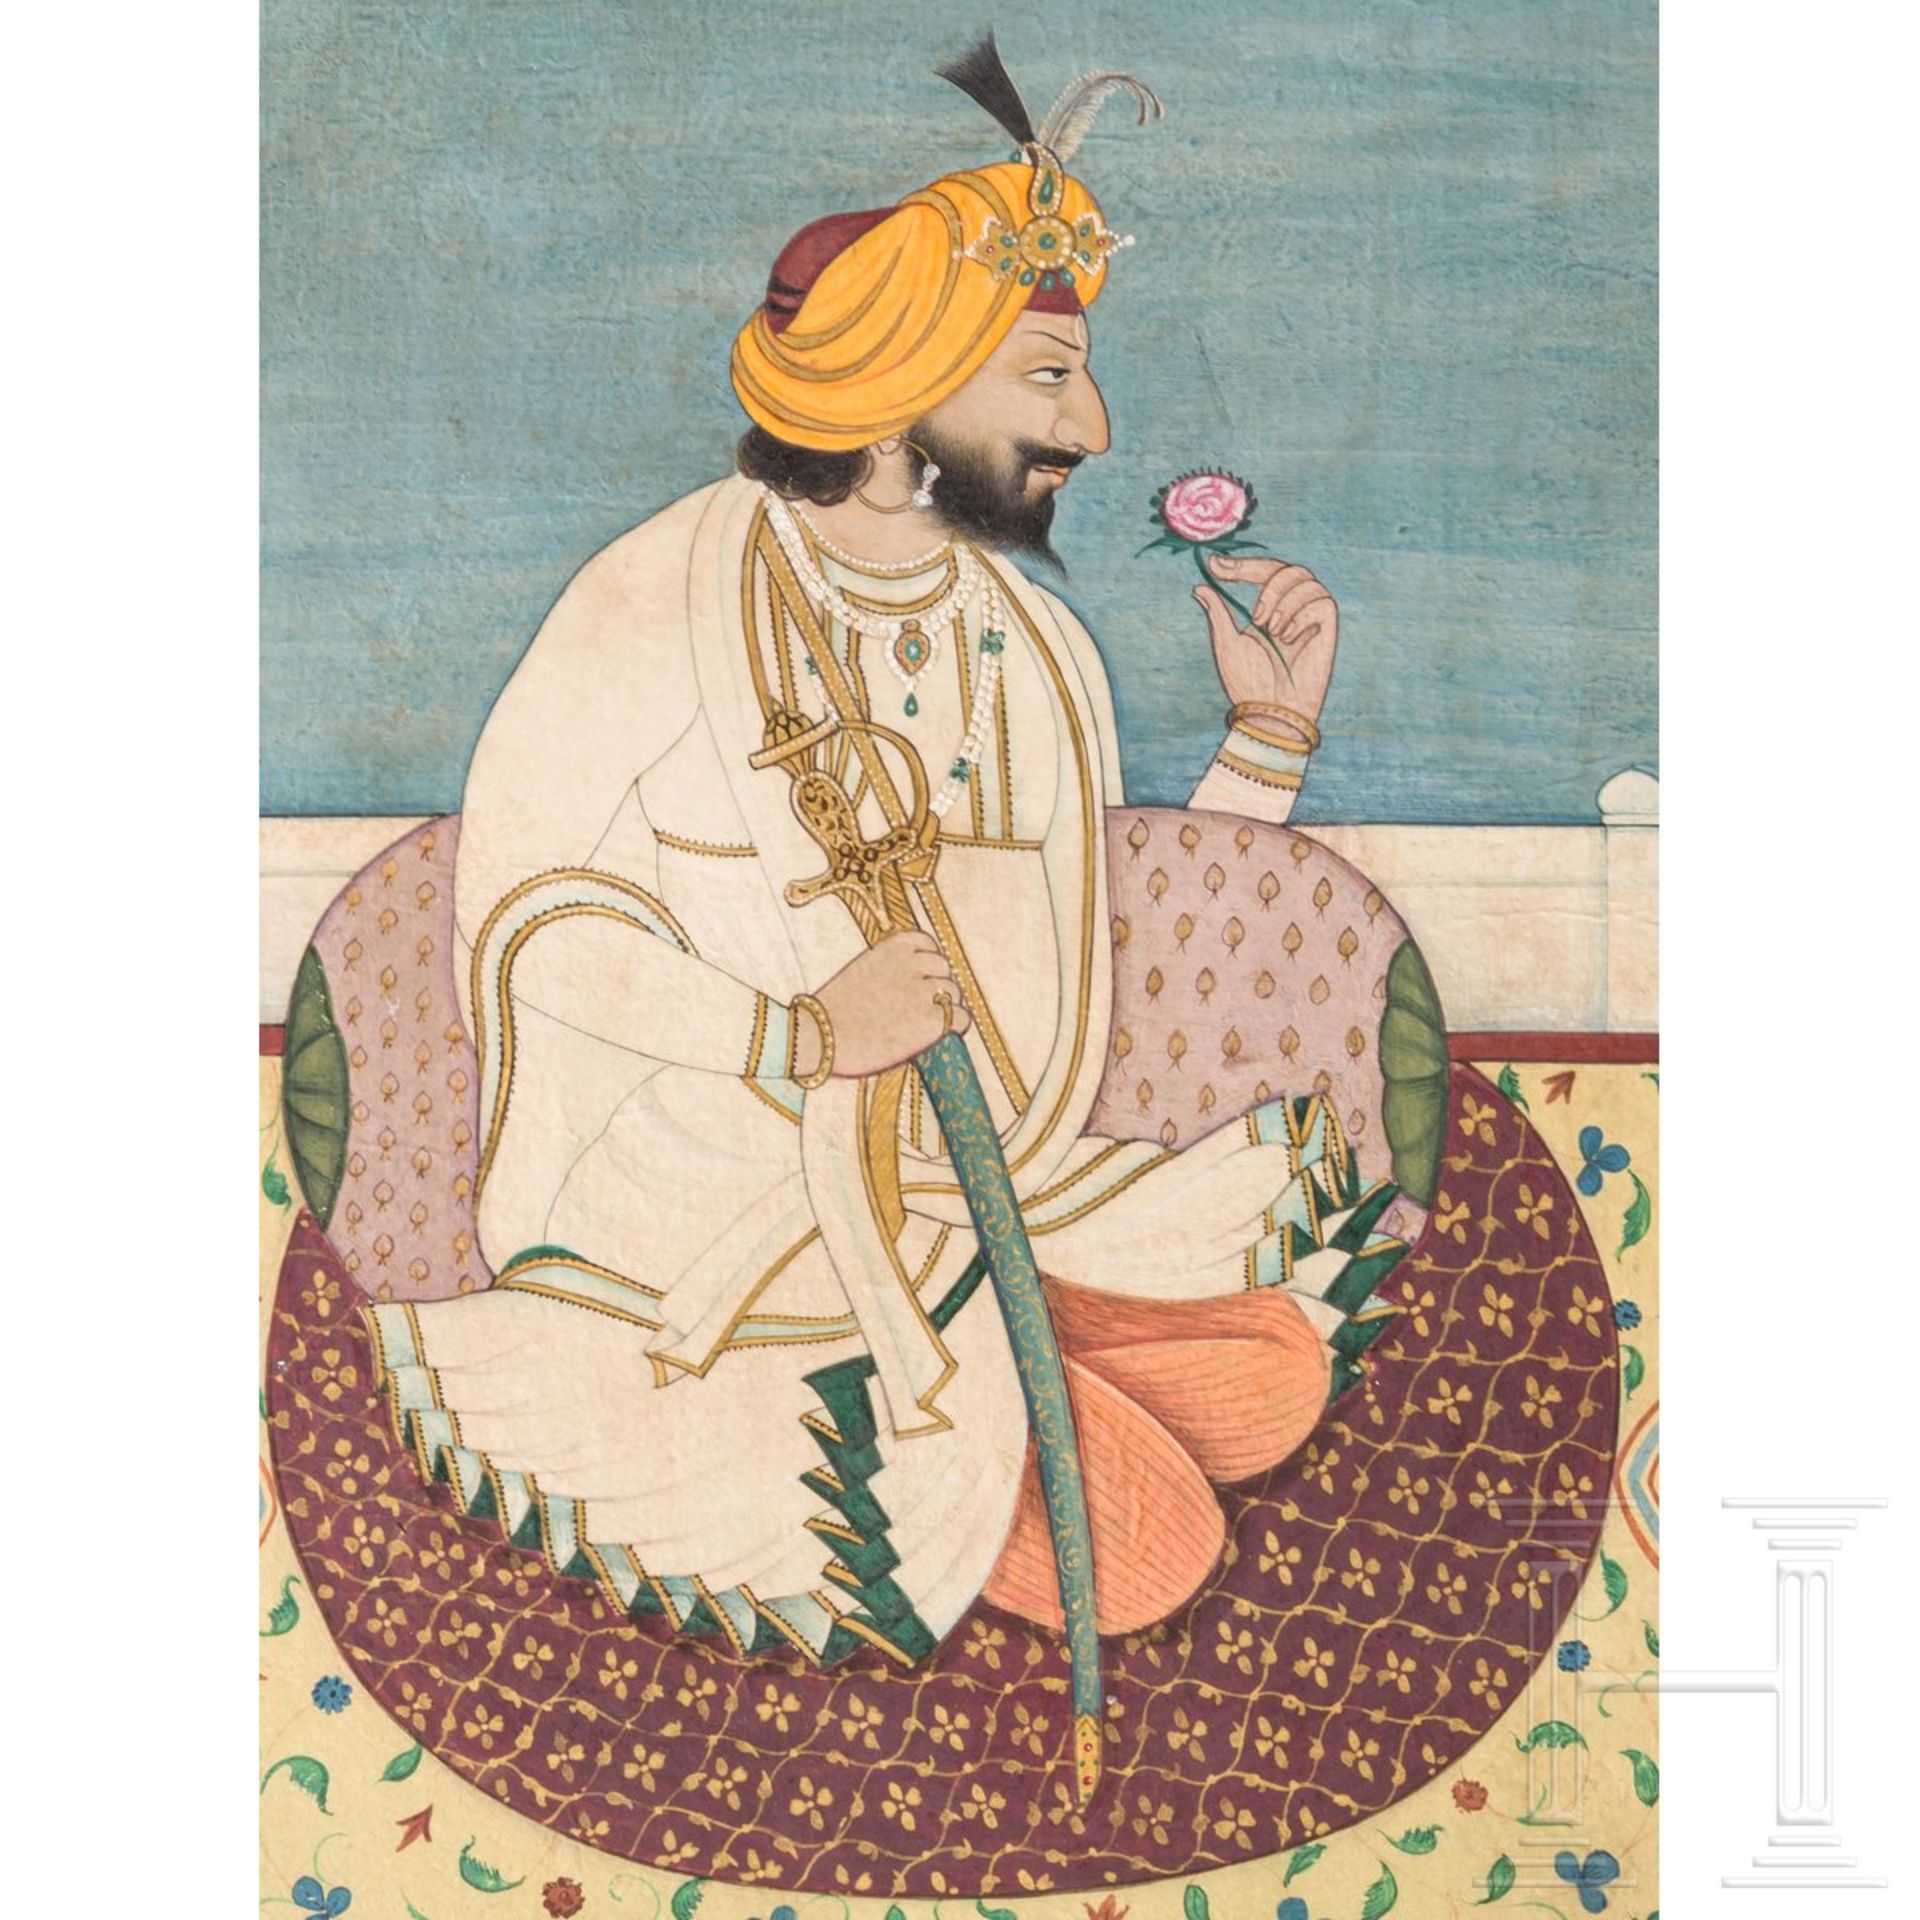 Miniatur des Maharadschas Gulab Singh von Kaschmir, Indien, Jammu, um 1880Gouache auf Papier. - Bild 4 aus 4